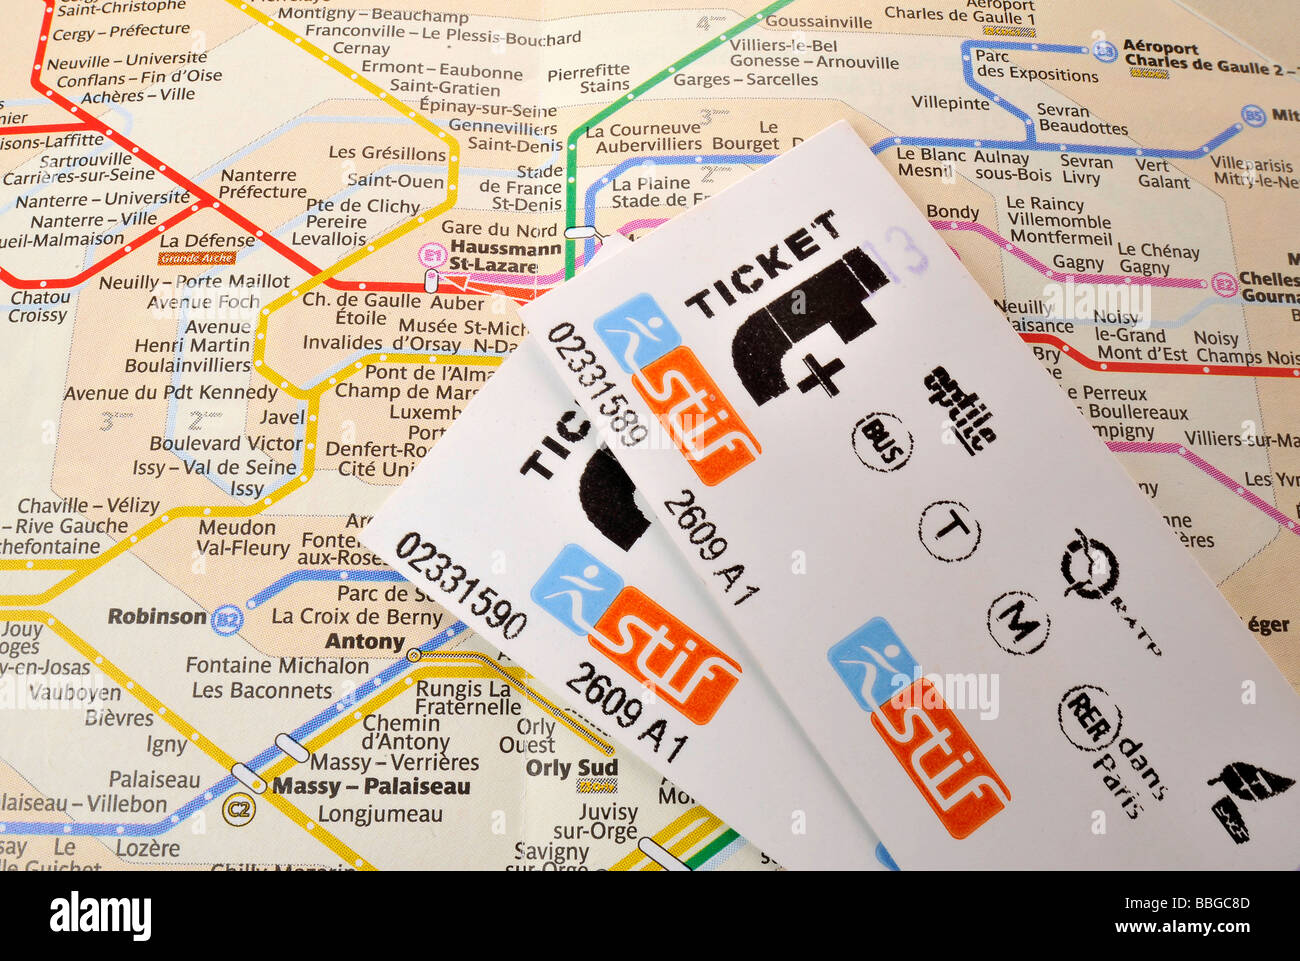 Un aller simple sur un plan du métro de Paris, Paris, France, Europe Banque D'Images